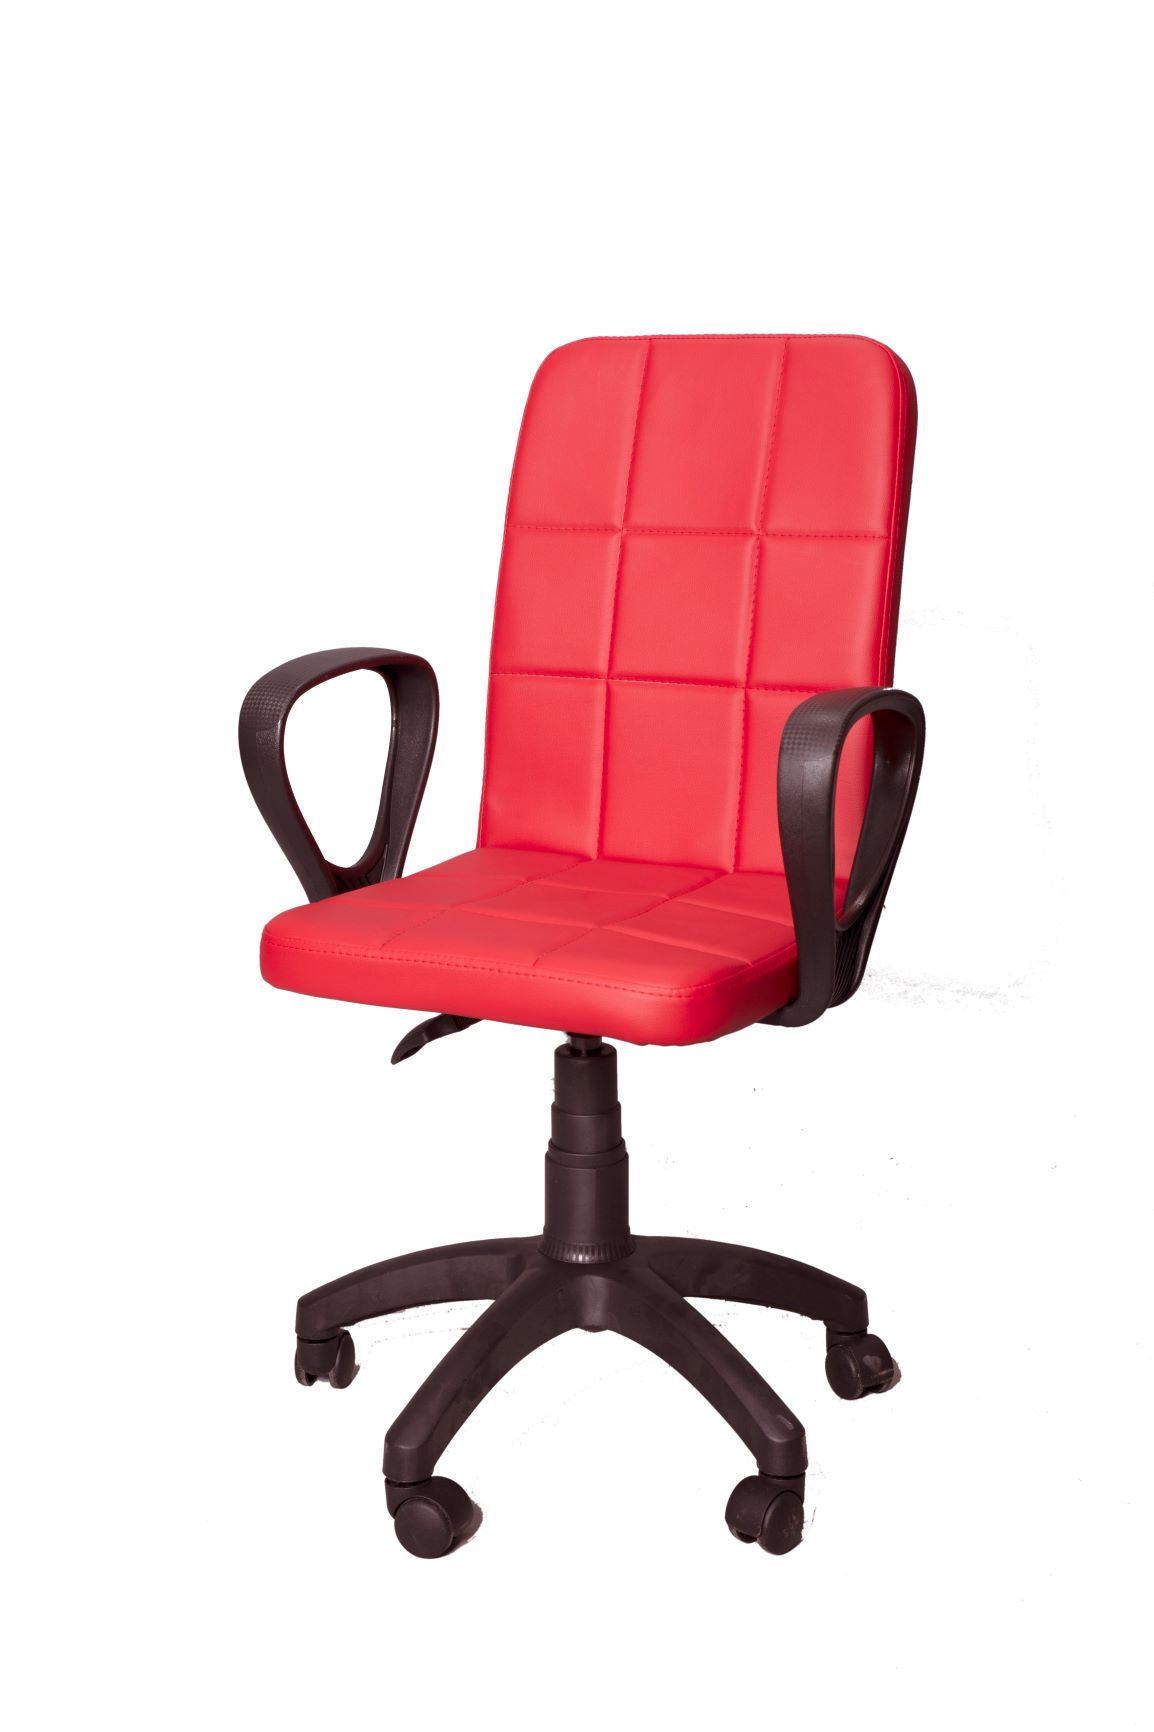 Ofis Sandalyesi ile Verimli ve Renkli Bir Çalışma Ortamı Yaratın